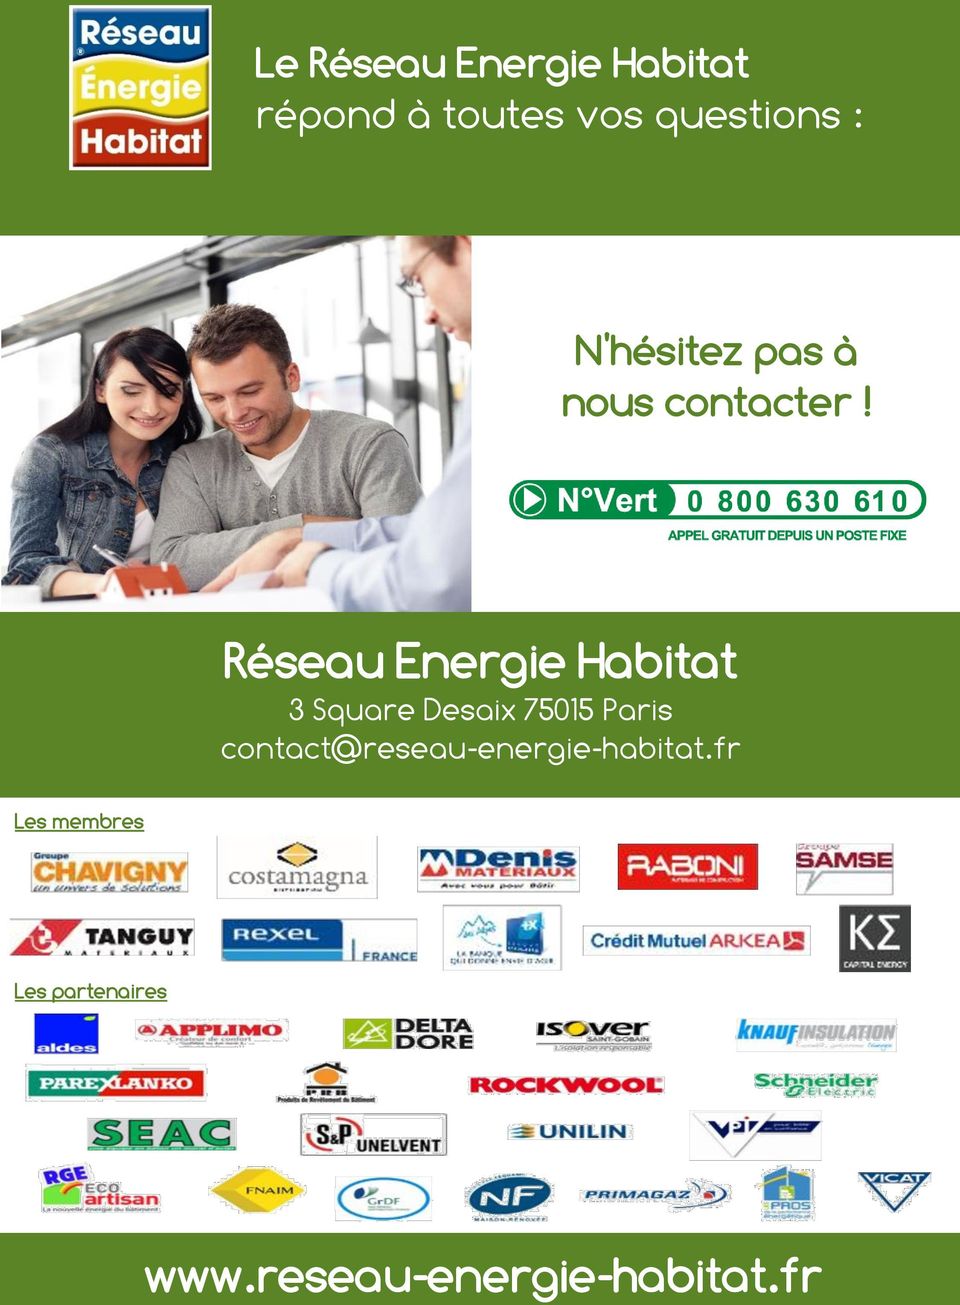 Réseau Energie Habitat 3 Square Desaix 75015 Paris